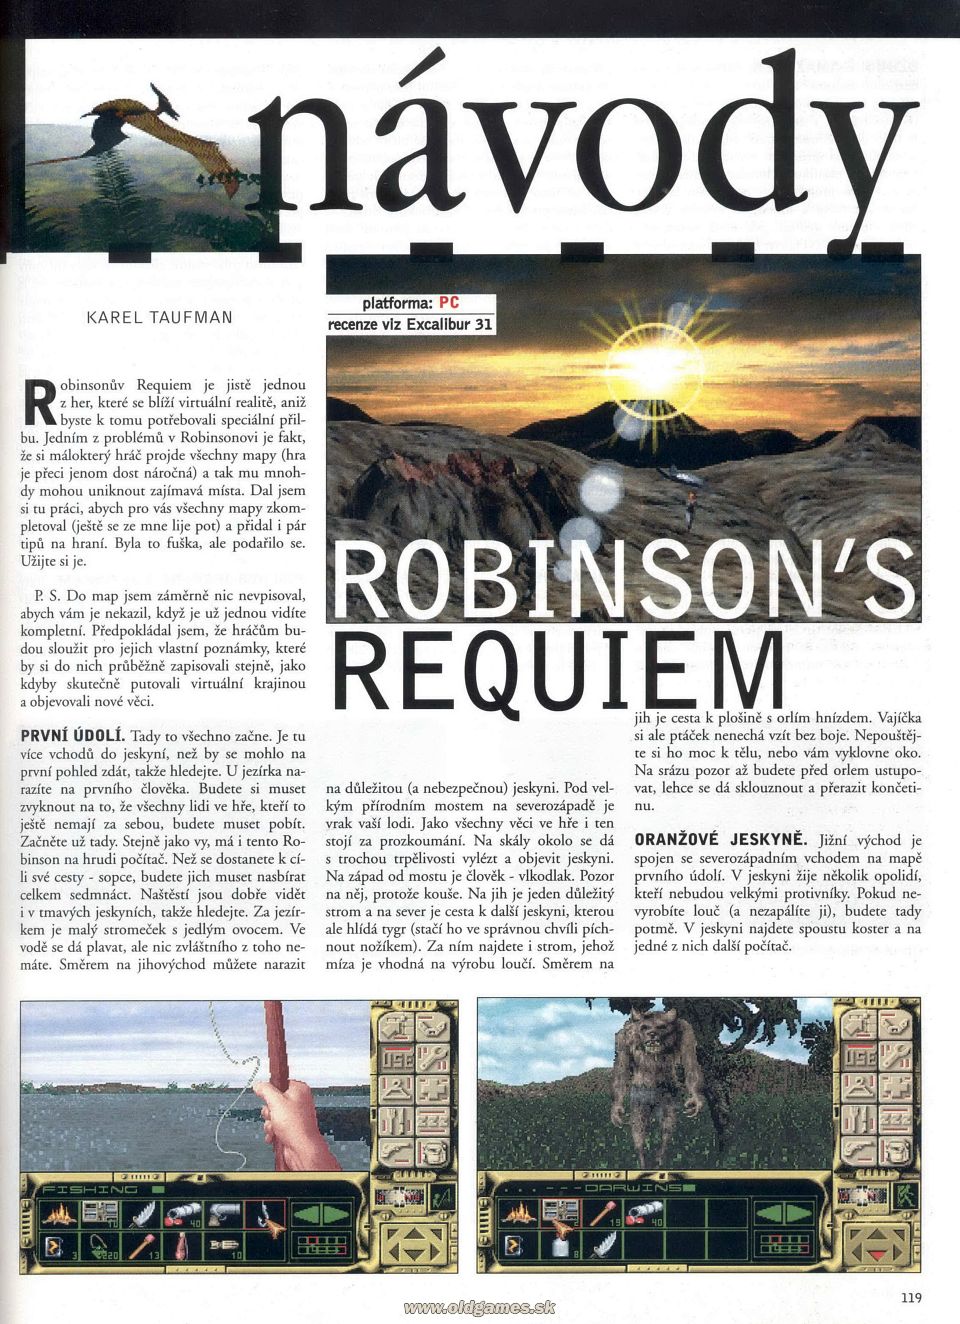 Návod: Robinson's Requiem